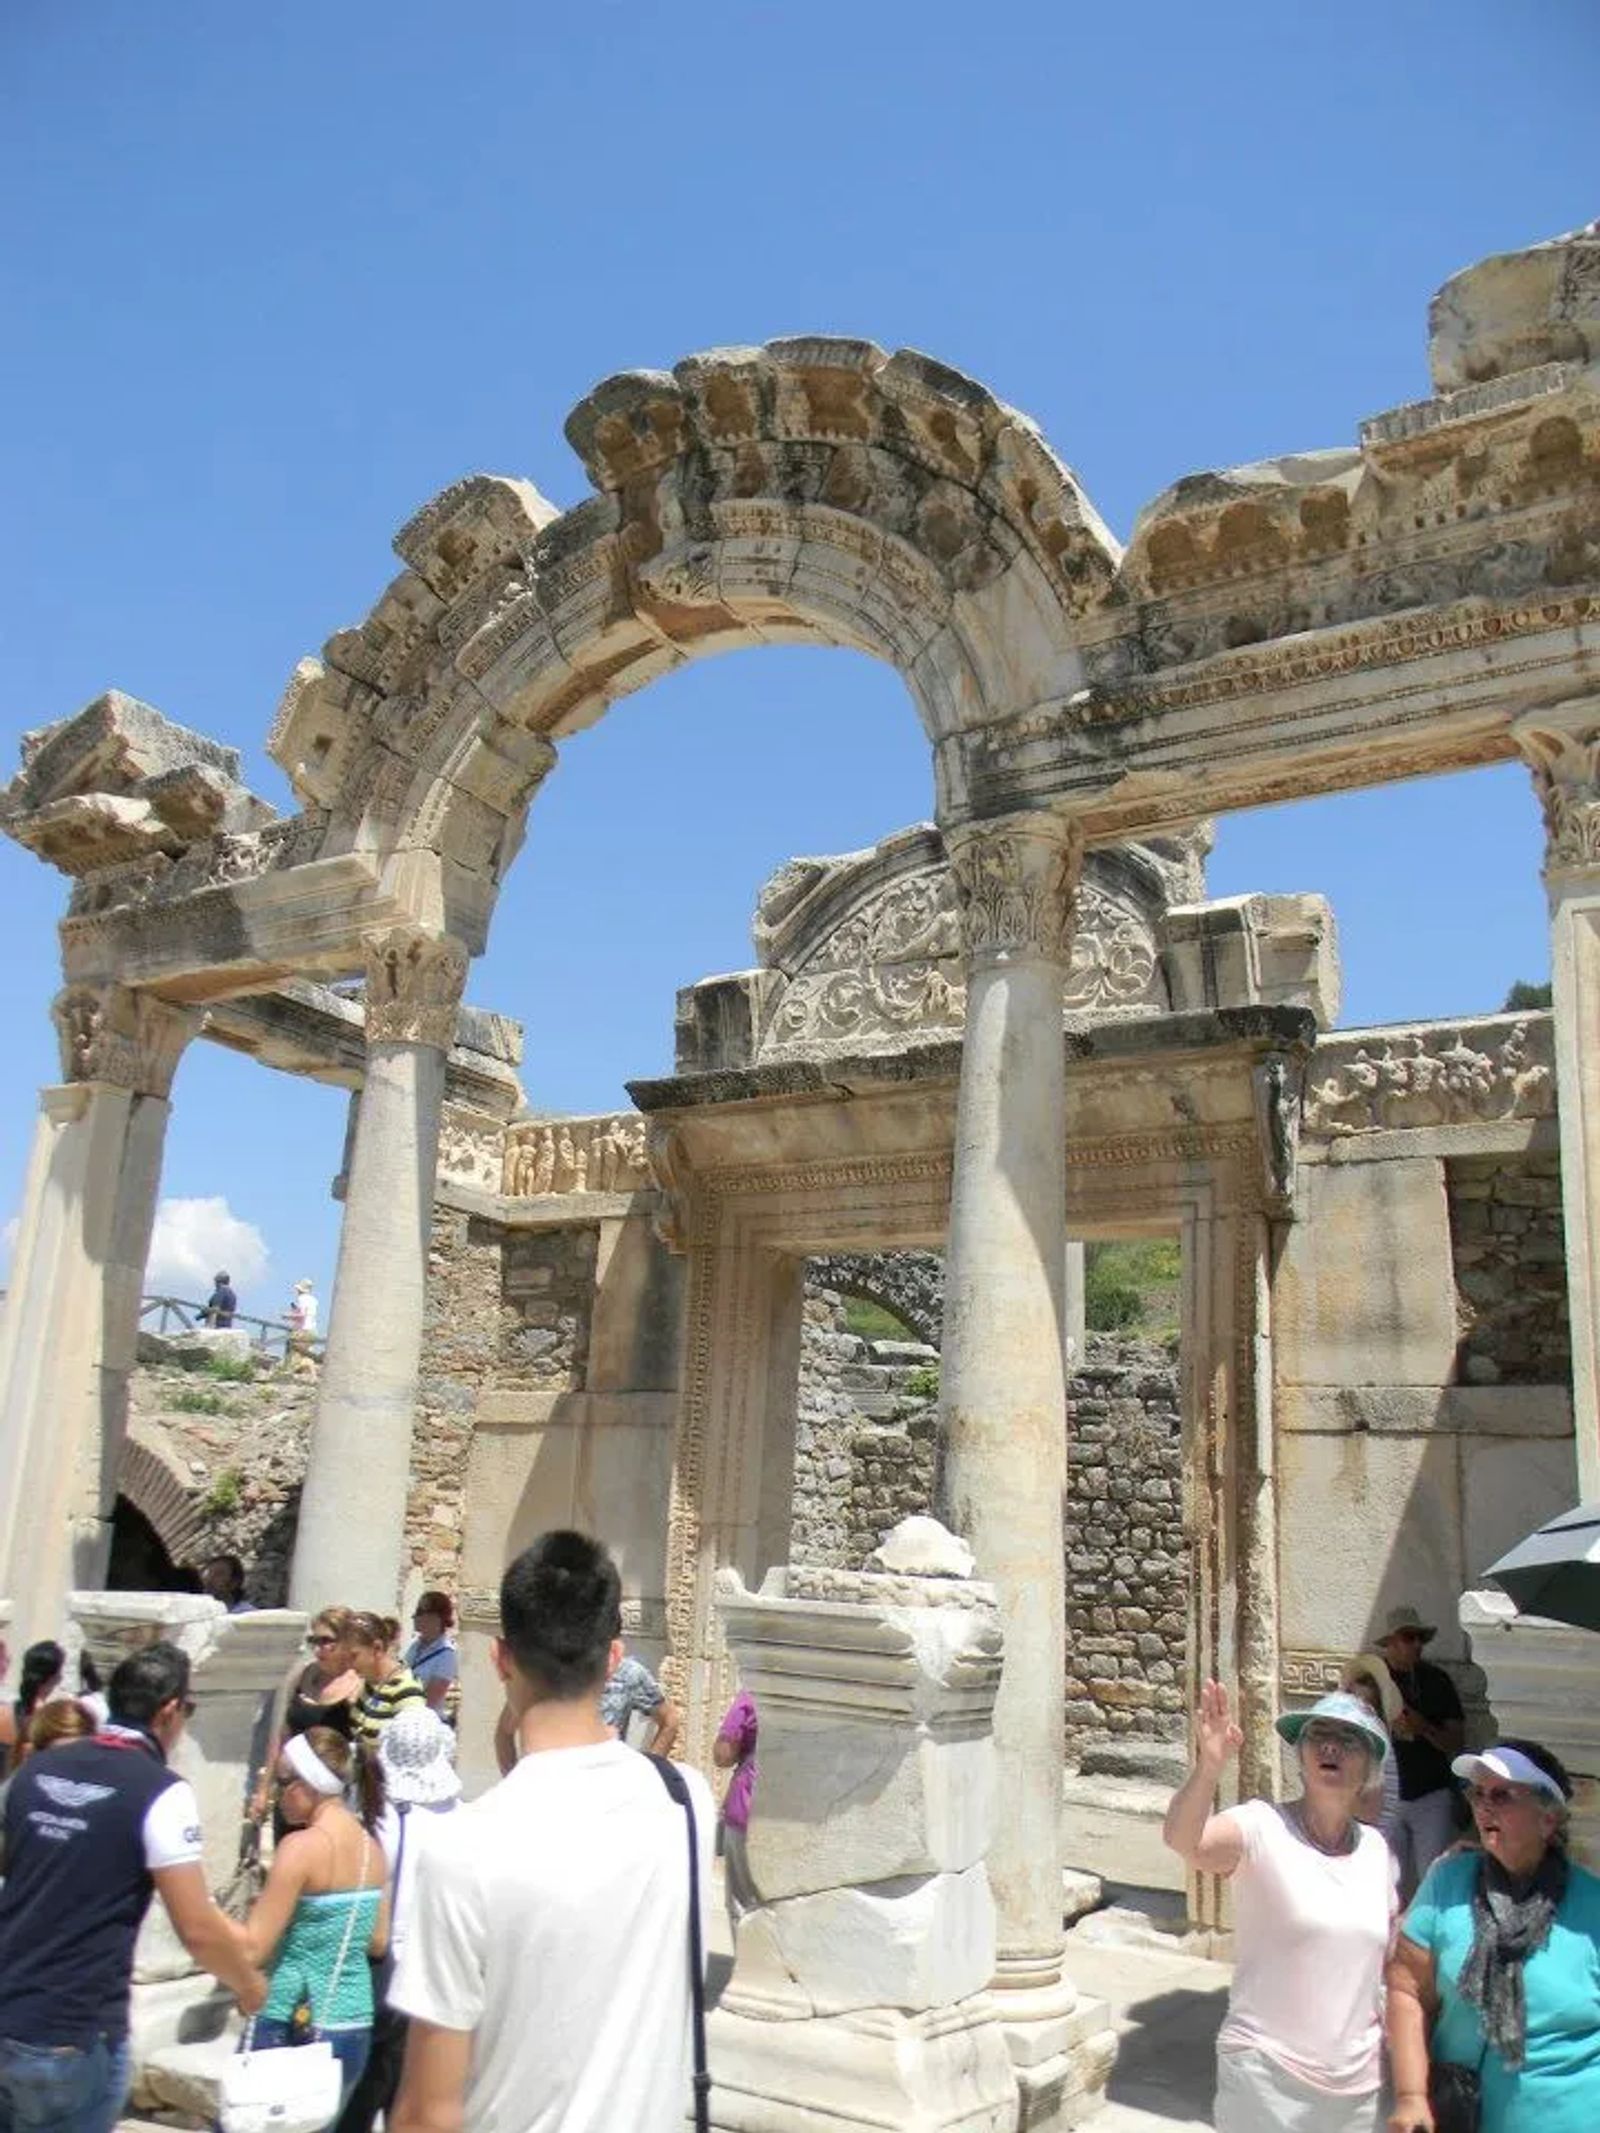 Visit Ephesus on a shore excursion - Culture Trekking - #Ephesus #EphesusTurkey #Ephesusshoreexcursion